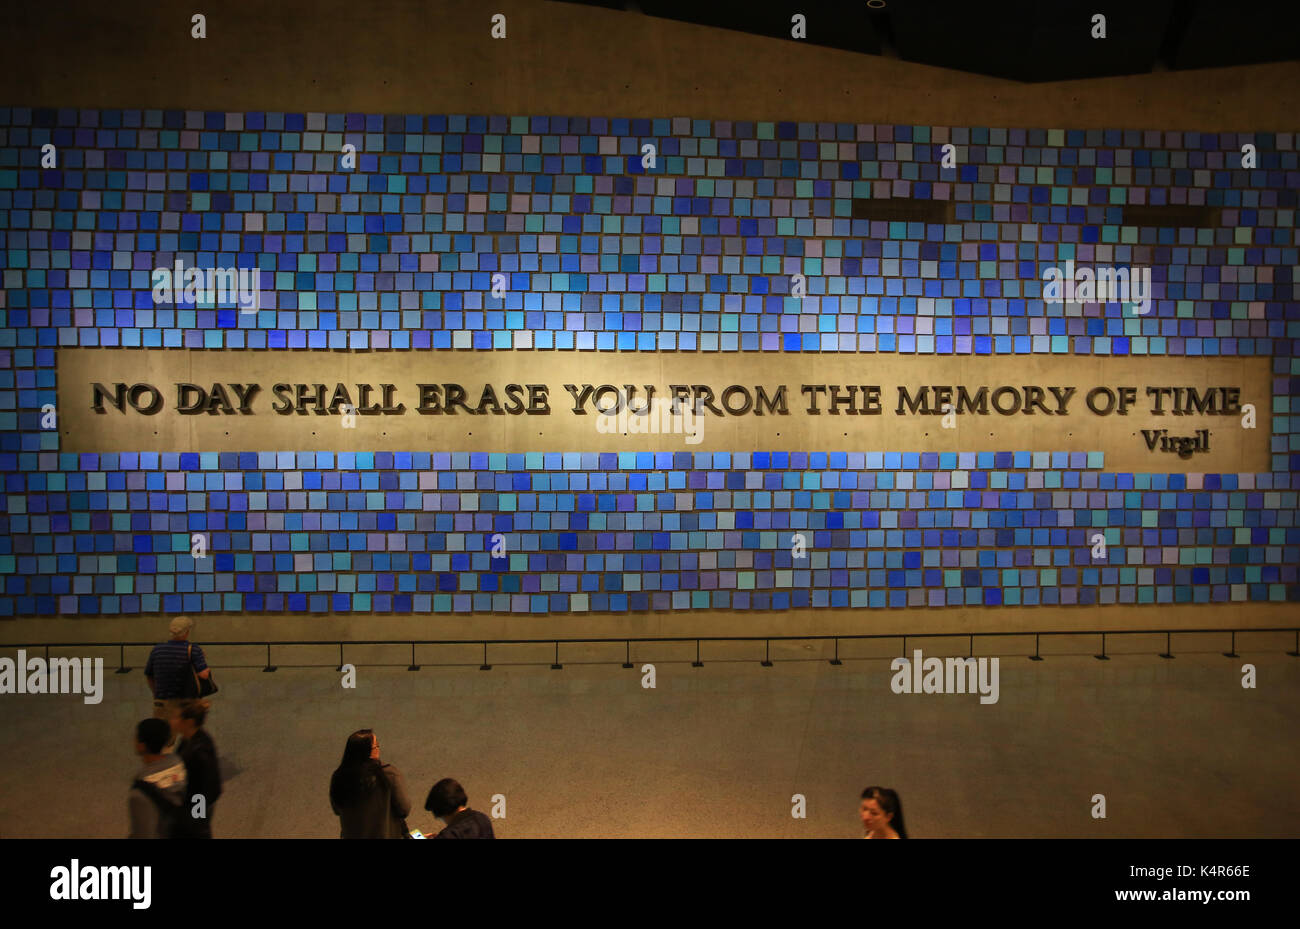 National September 11 Memorial Museum Foto Stock